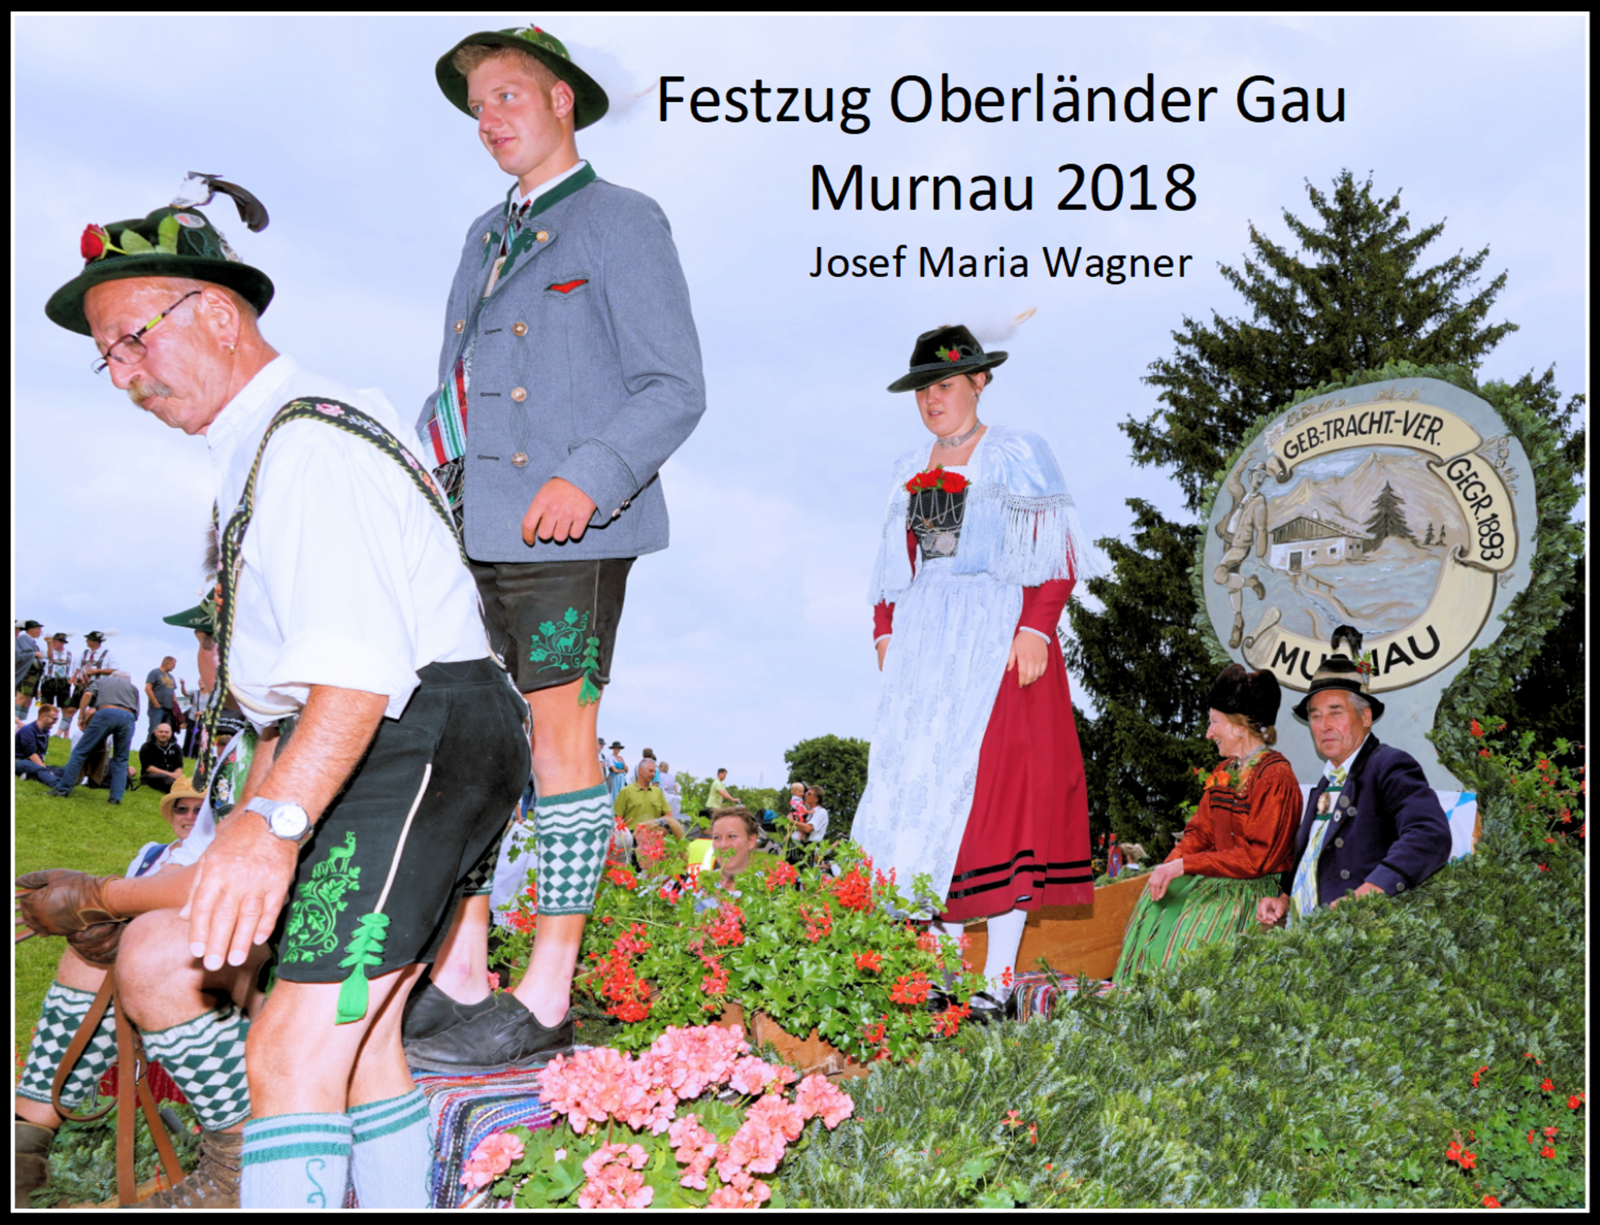 Festzug Oberländer Gau Murnau 2018